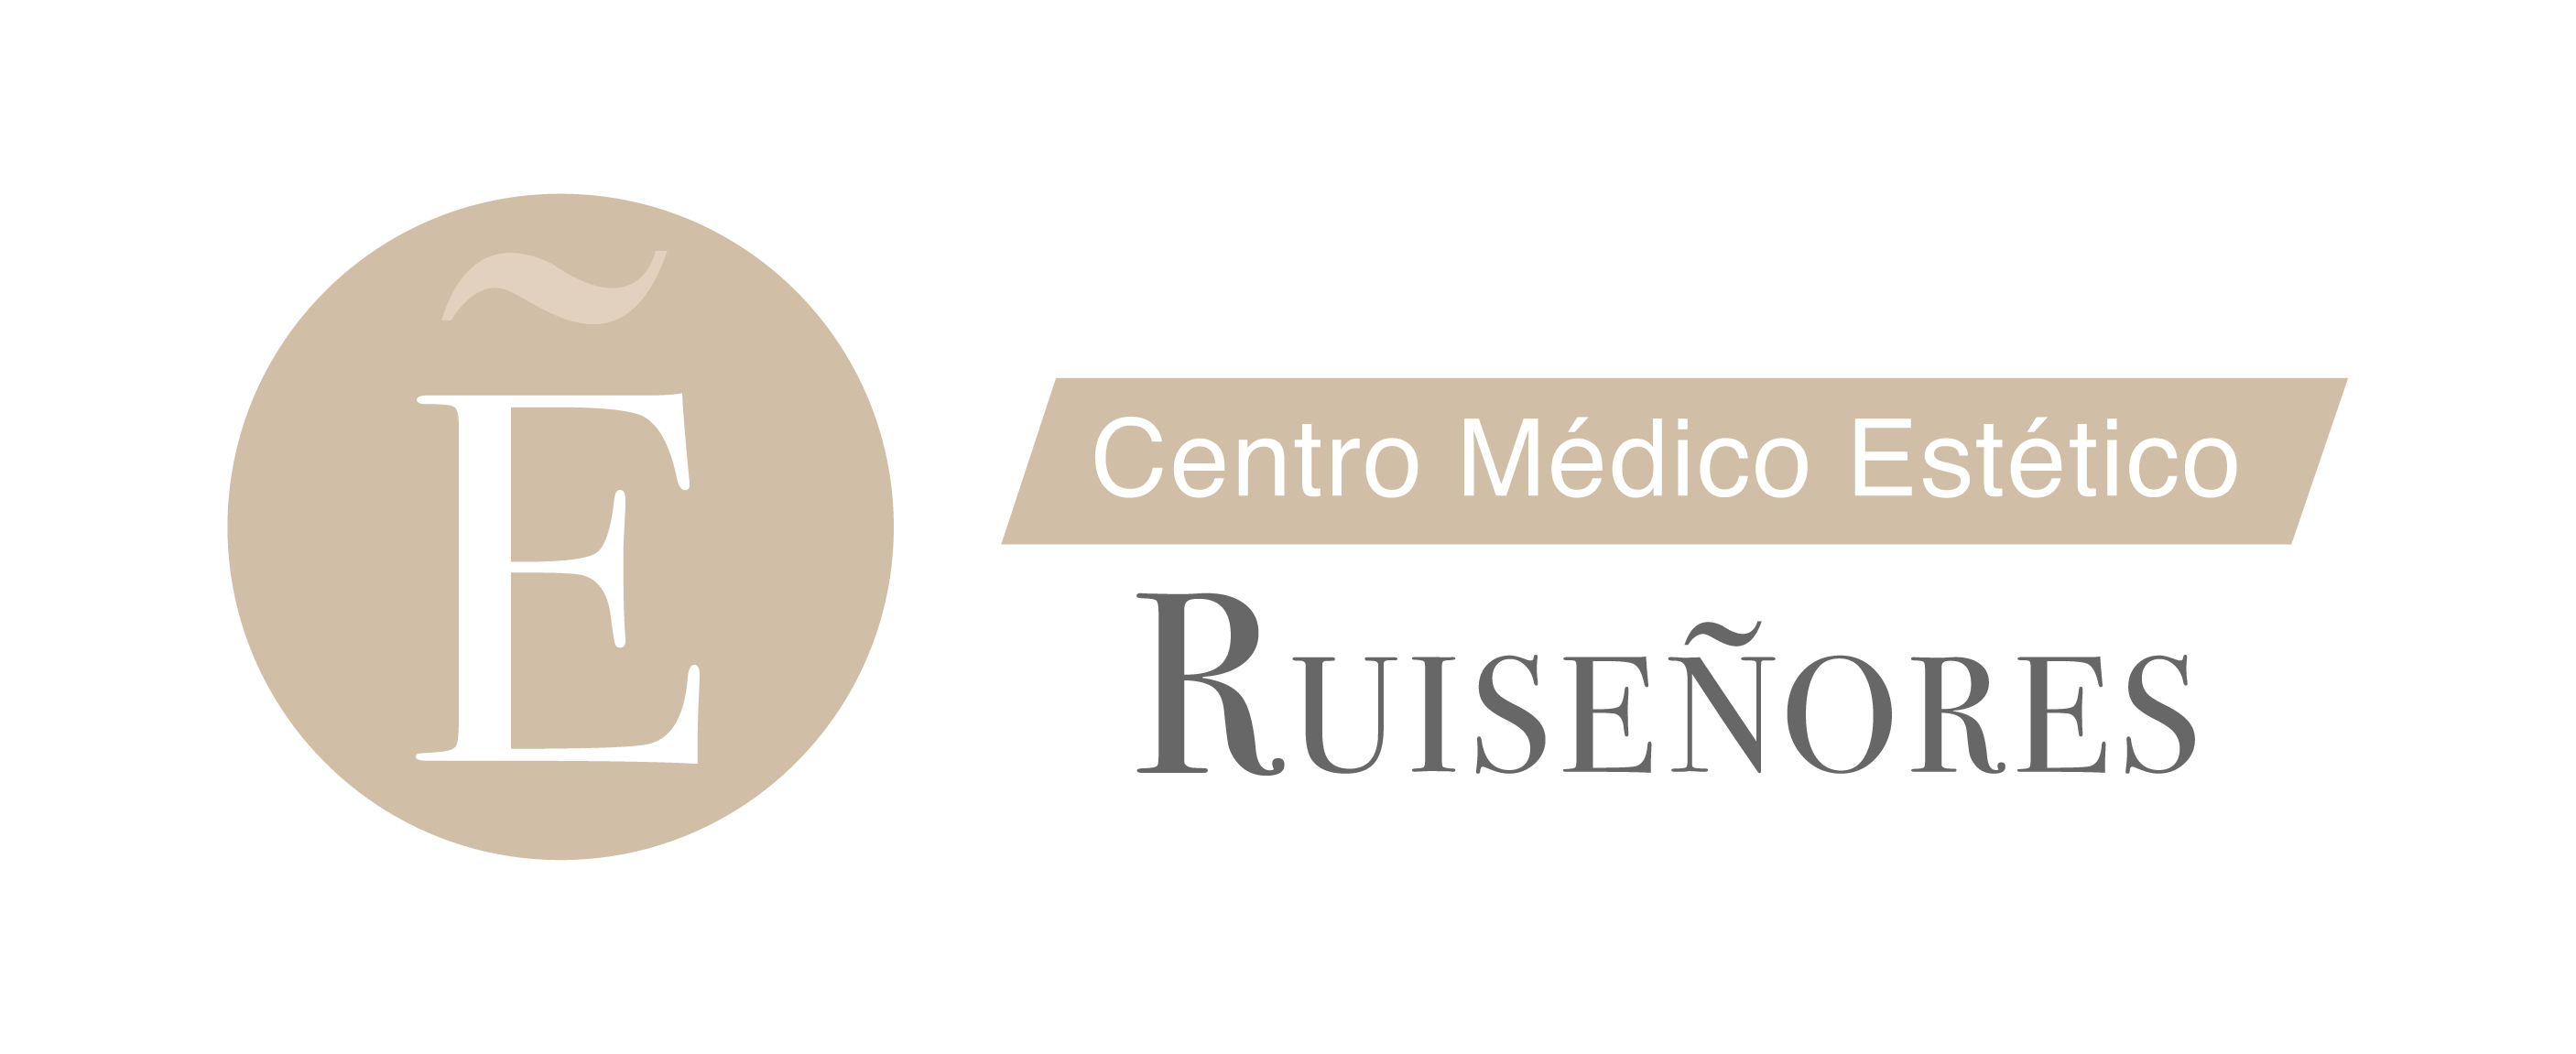 Centro Médico Estético Ruiseñores